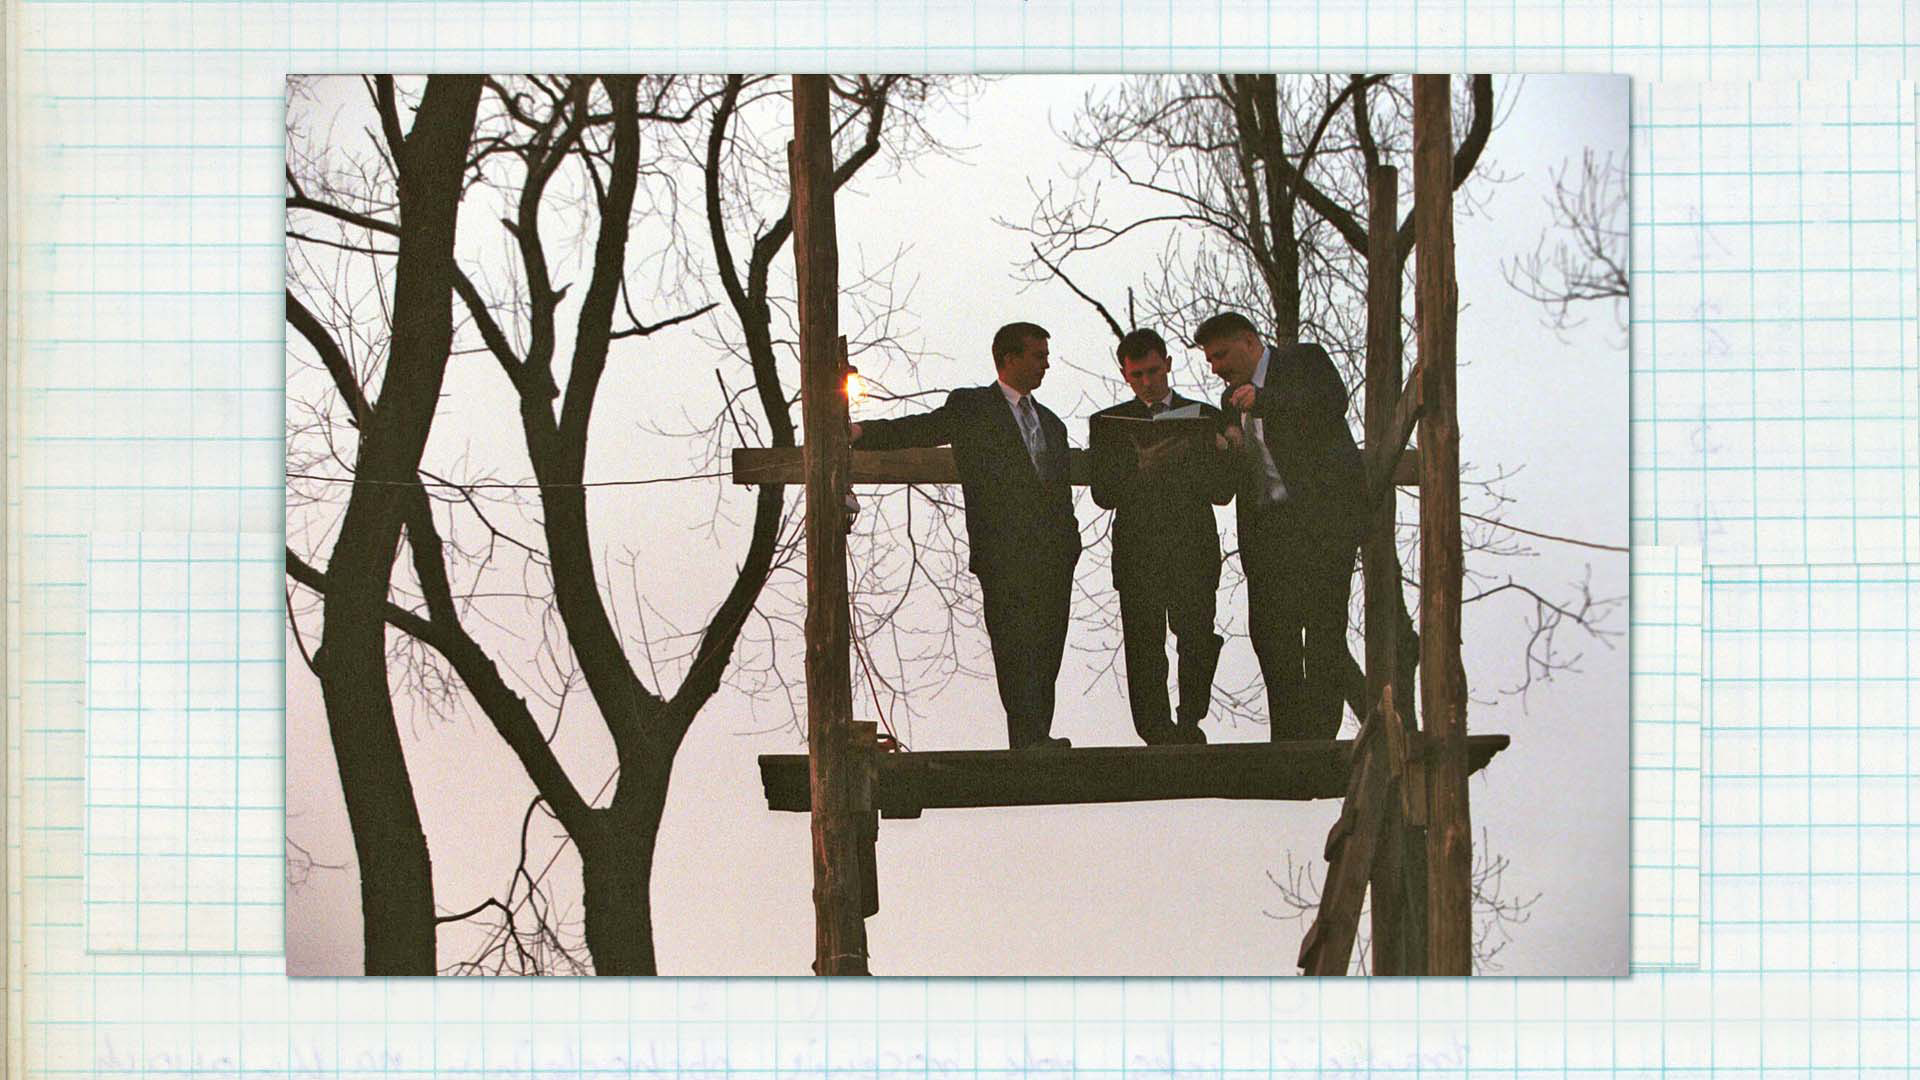 Wygłaszanie przywołówek, Niedziela Wielkanocna, 2004, fot. Damian Kramski Zdjęcie kolorowe. Trzech mężczyzn stojąc na drewnianej konstrukcji odczytuje notatki z czerwonej księgi.